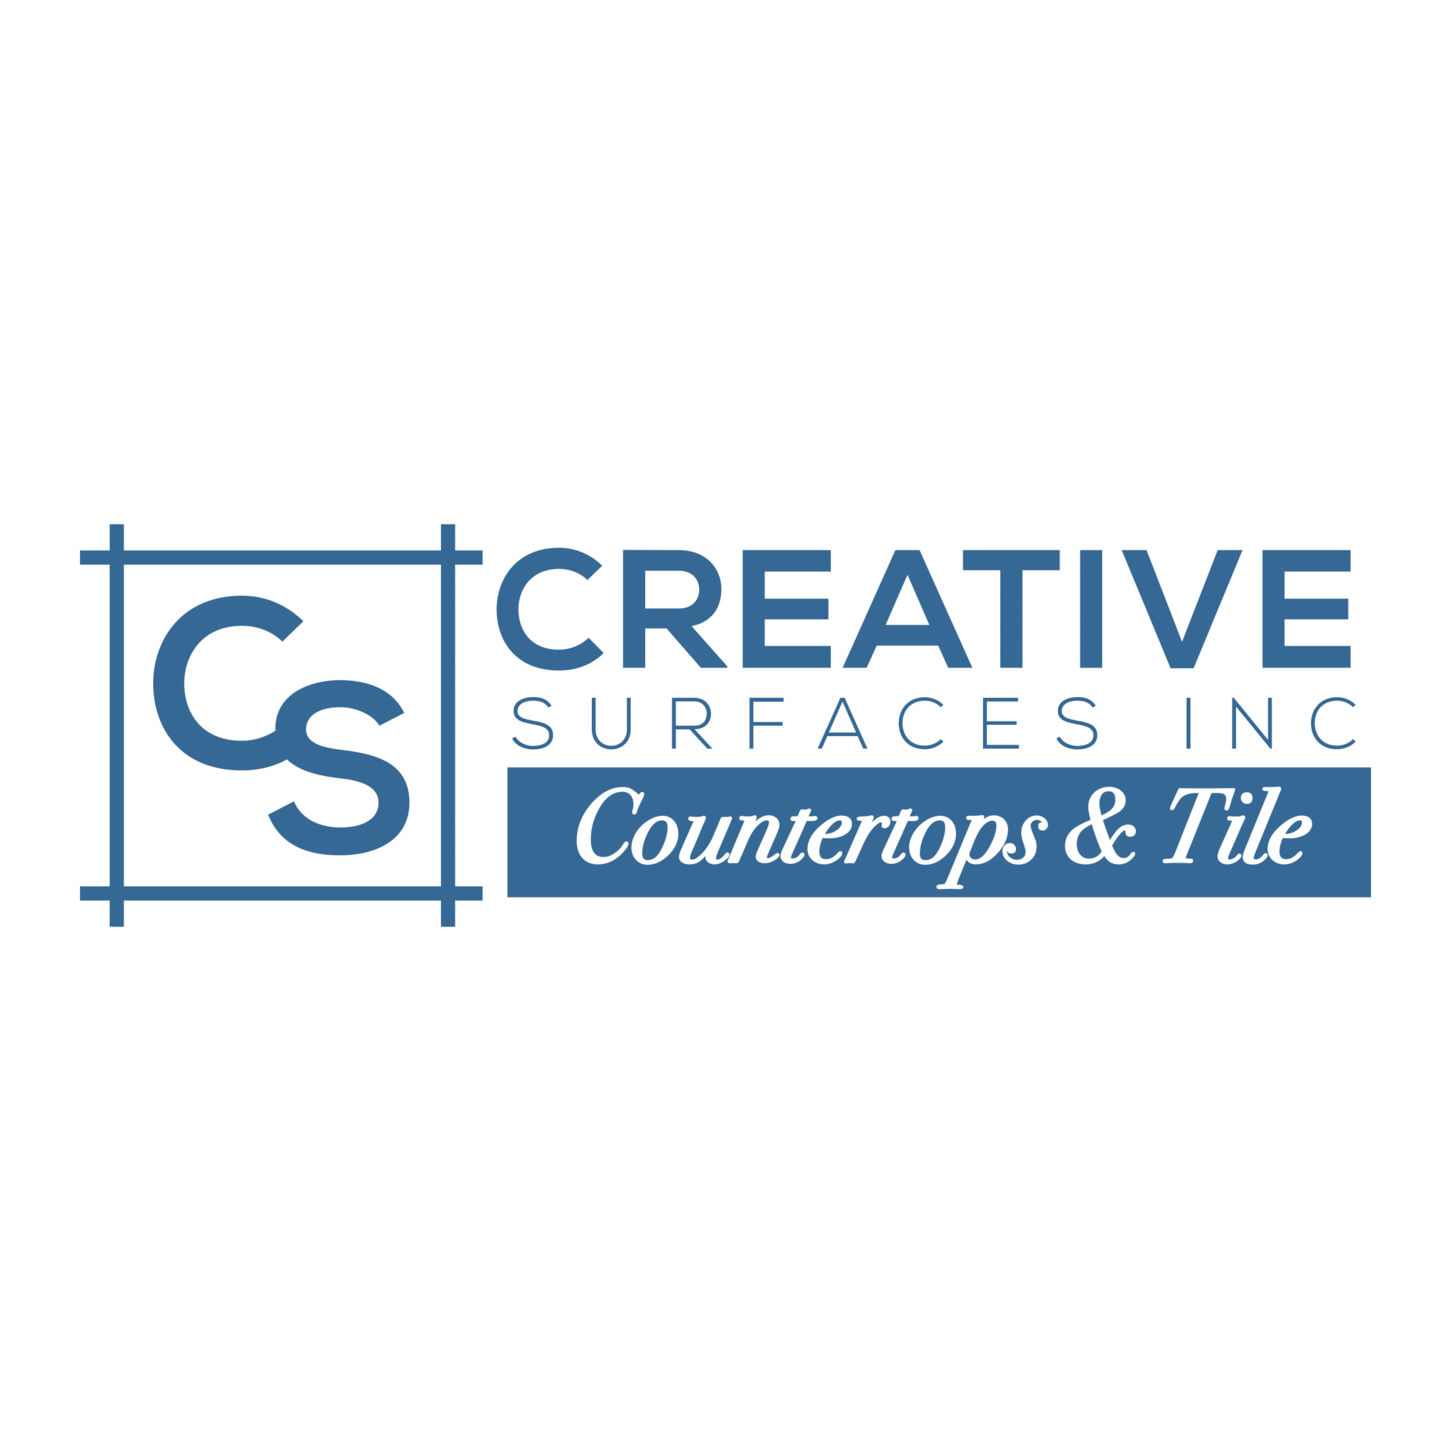 Creative Surfaces Countertops & Tile Logo Creative Surfaces Countertops & Tile Sioux Falls (605)362-5853